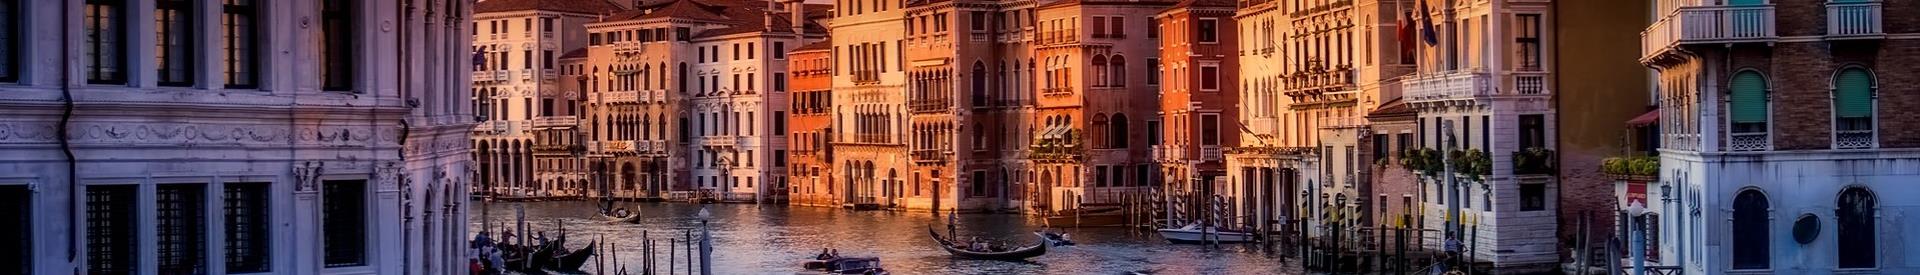 Venice-Best western Hotel Titian Inn